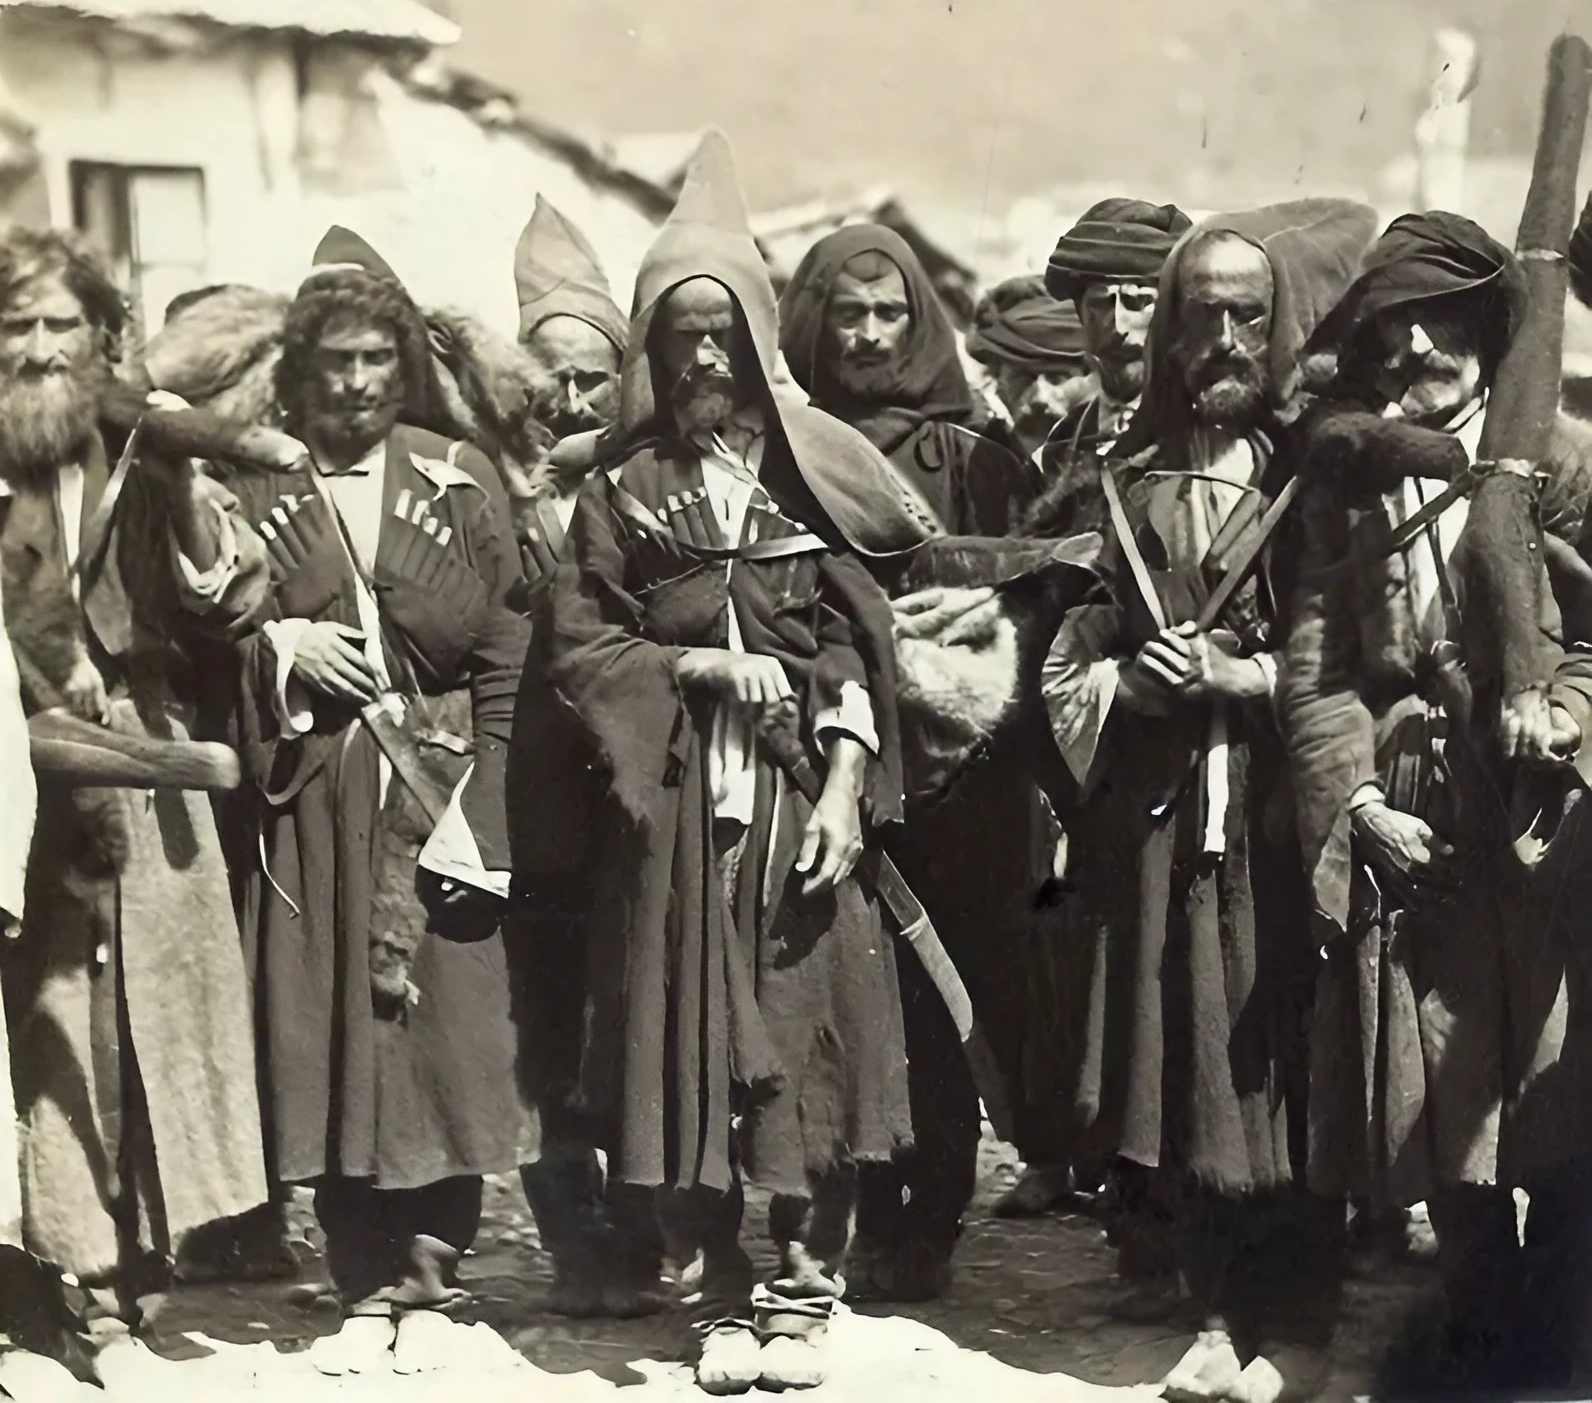 Abkhazians who took part in the 1866 Lykhny rebellion. Photo by Dmitri Yermakov (1846-1916).